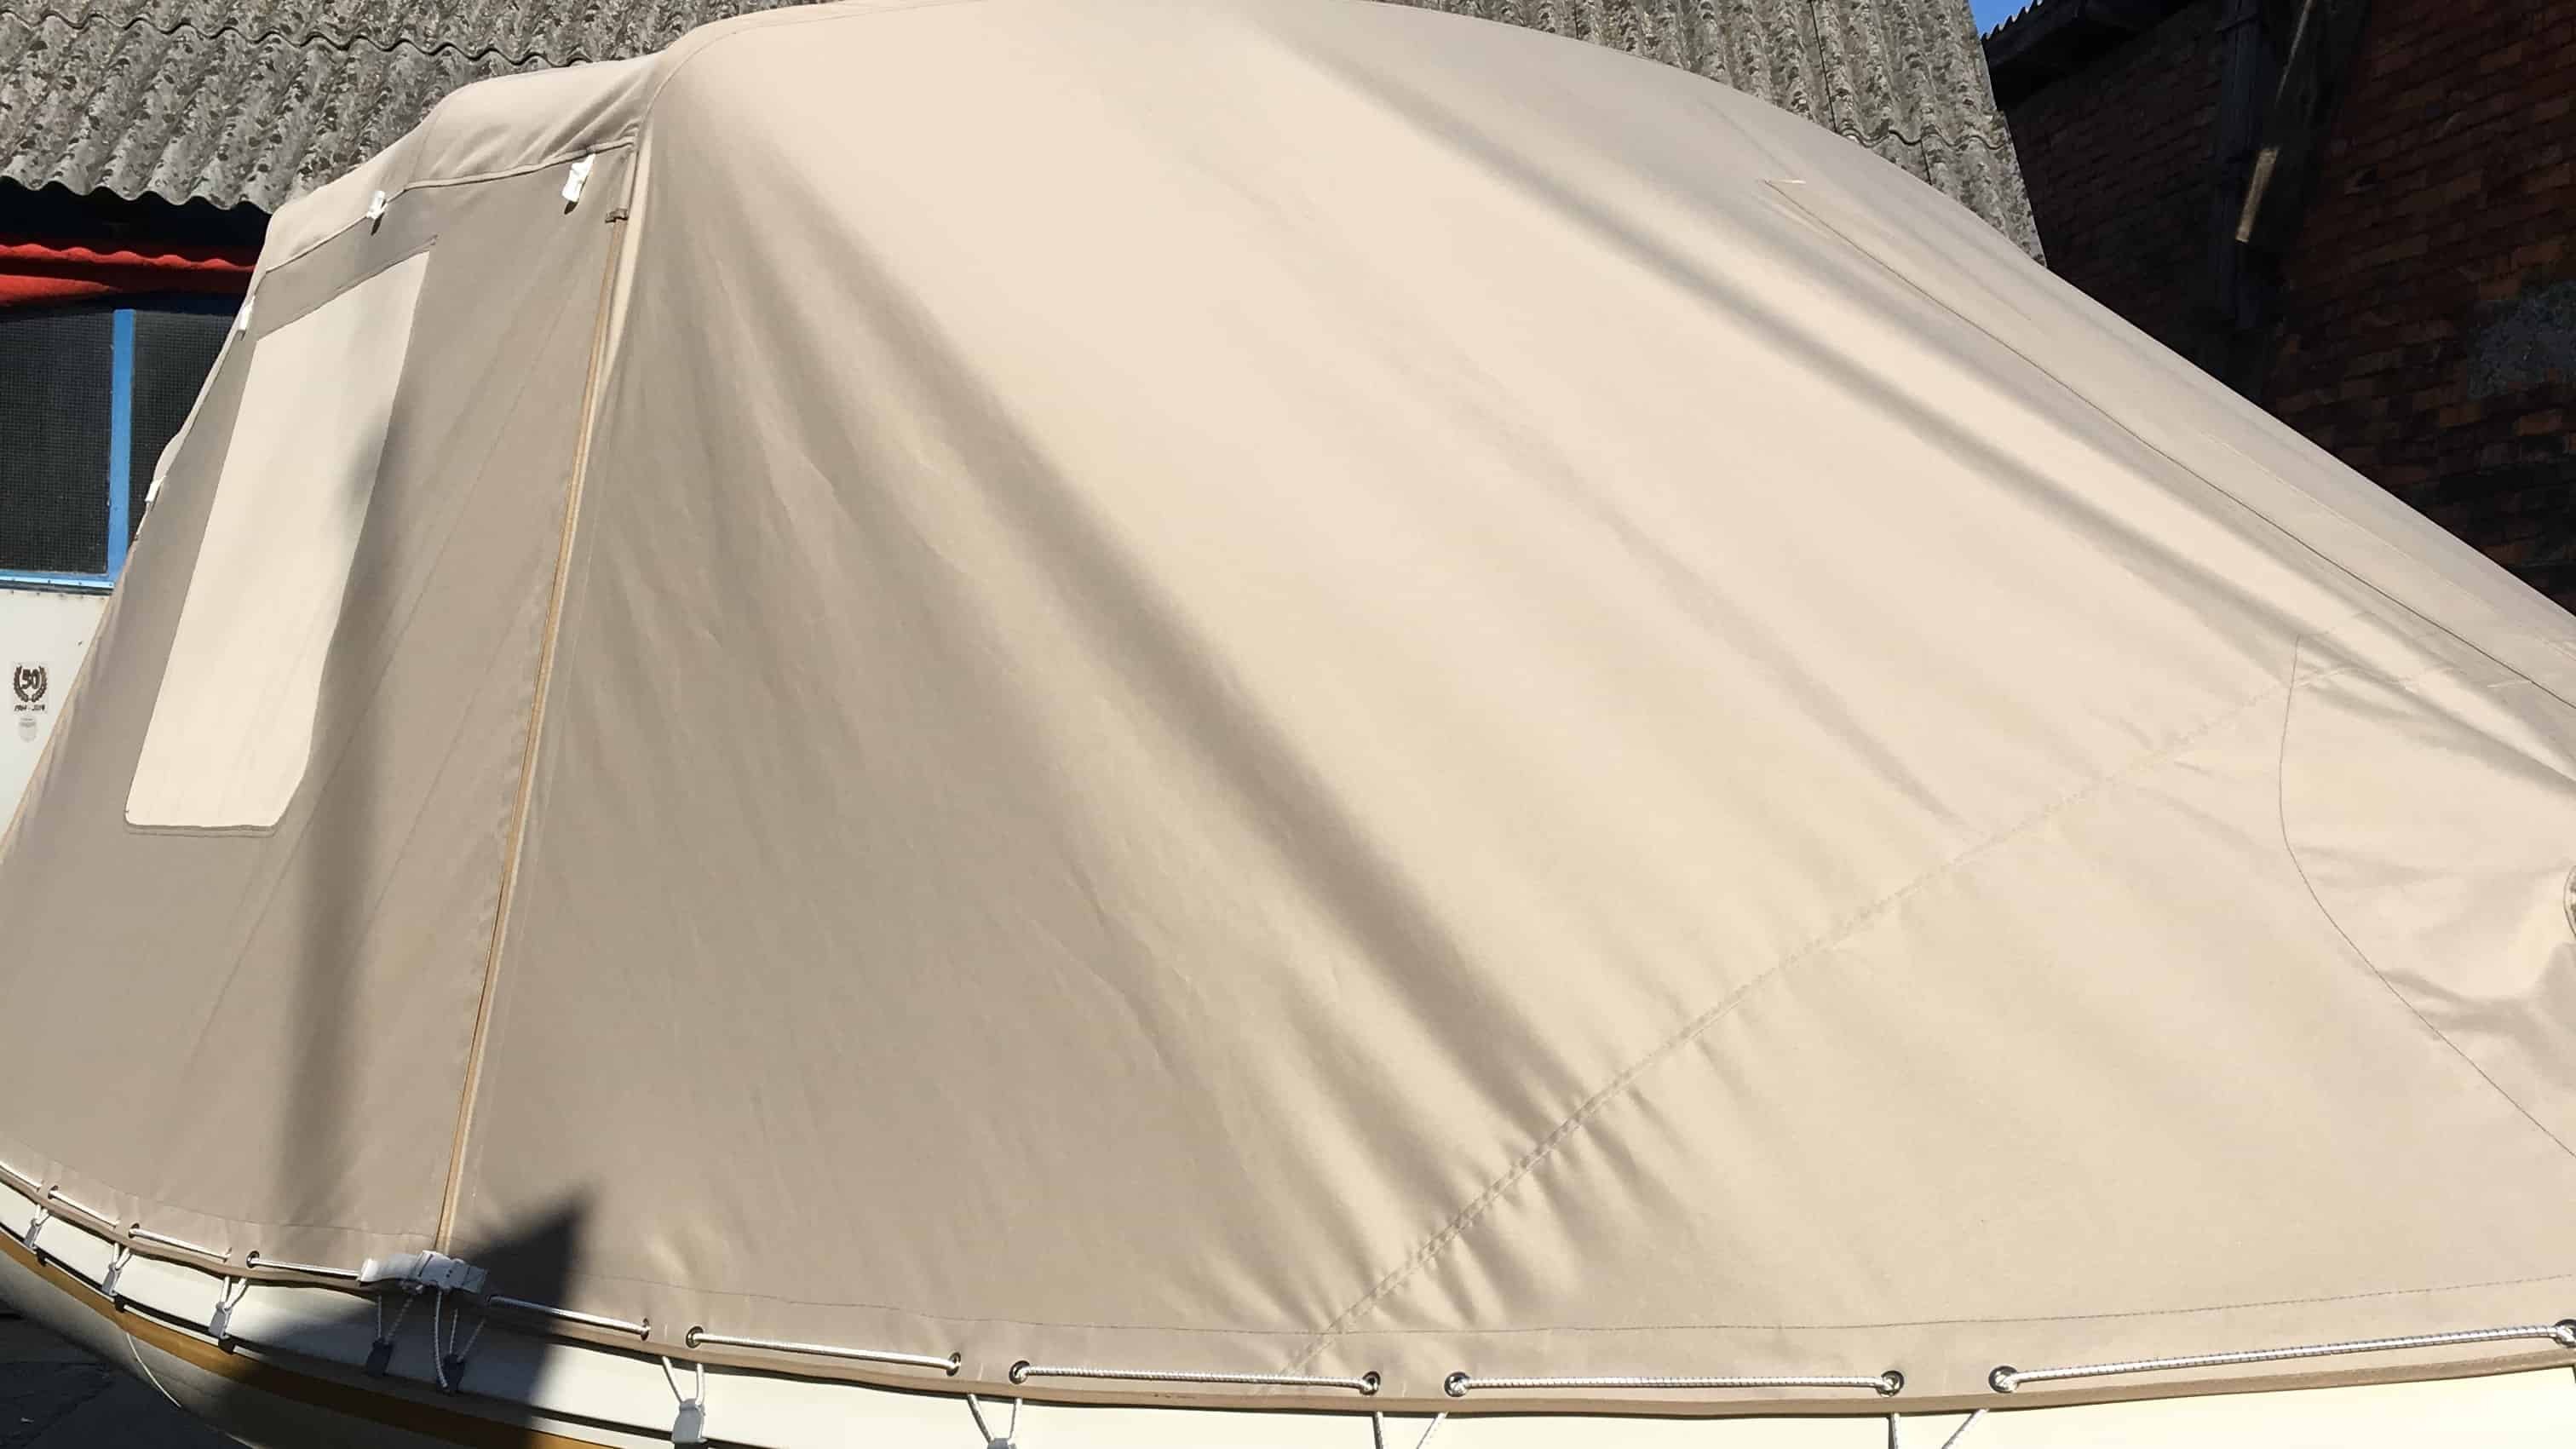 šator tenda u materijalu Sunbrella Surlast s PVC prozorima koji imaju mogućnost rolanja te integriranim komarnicima za GUMENJAK BARRACUDA